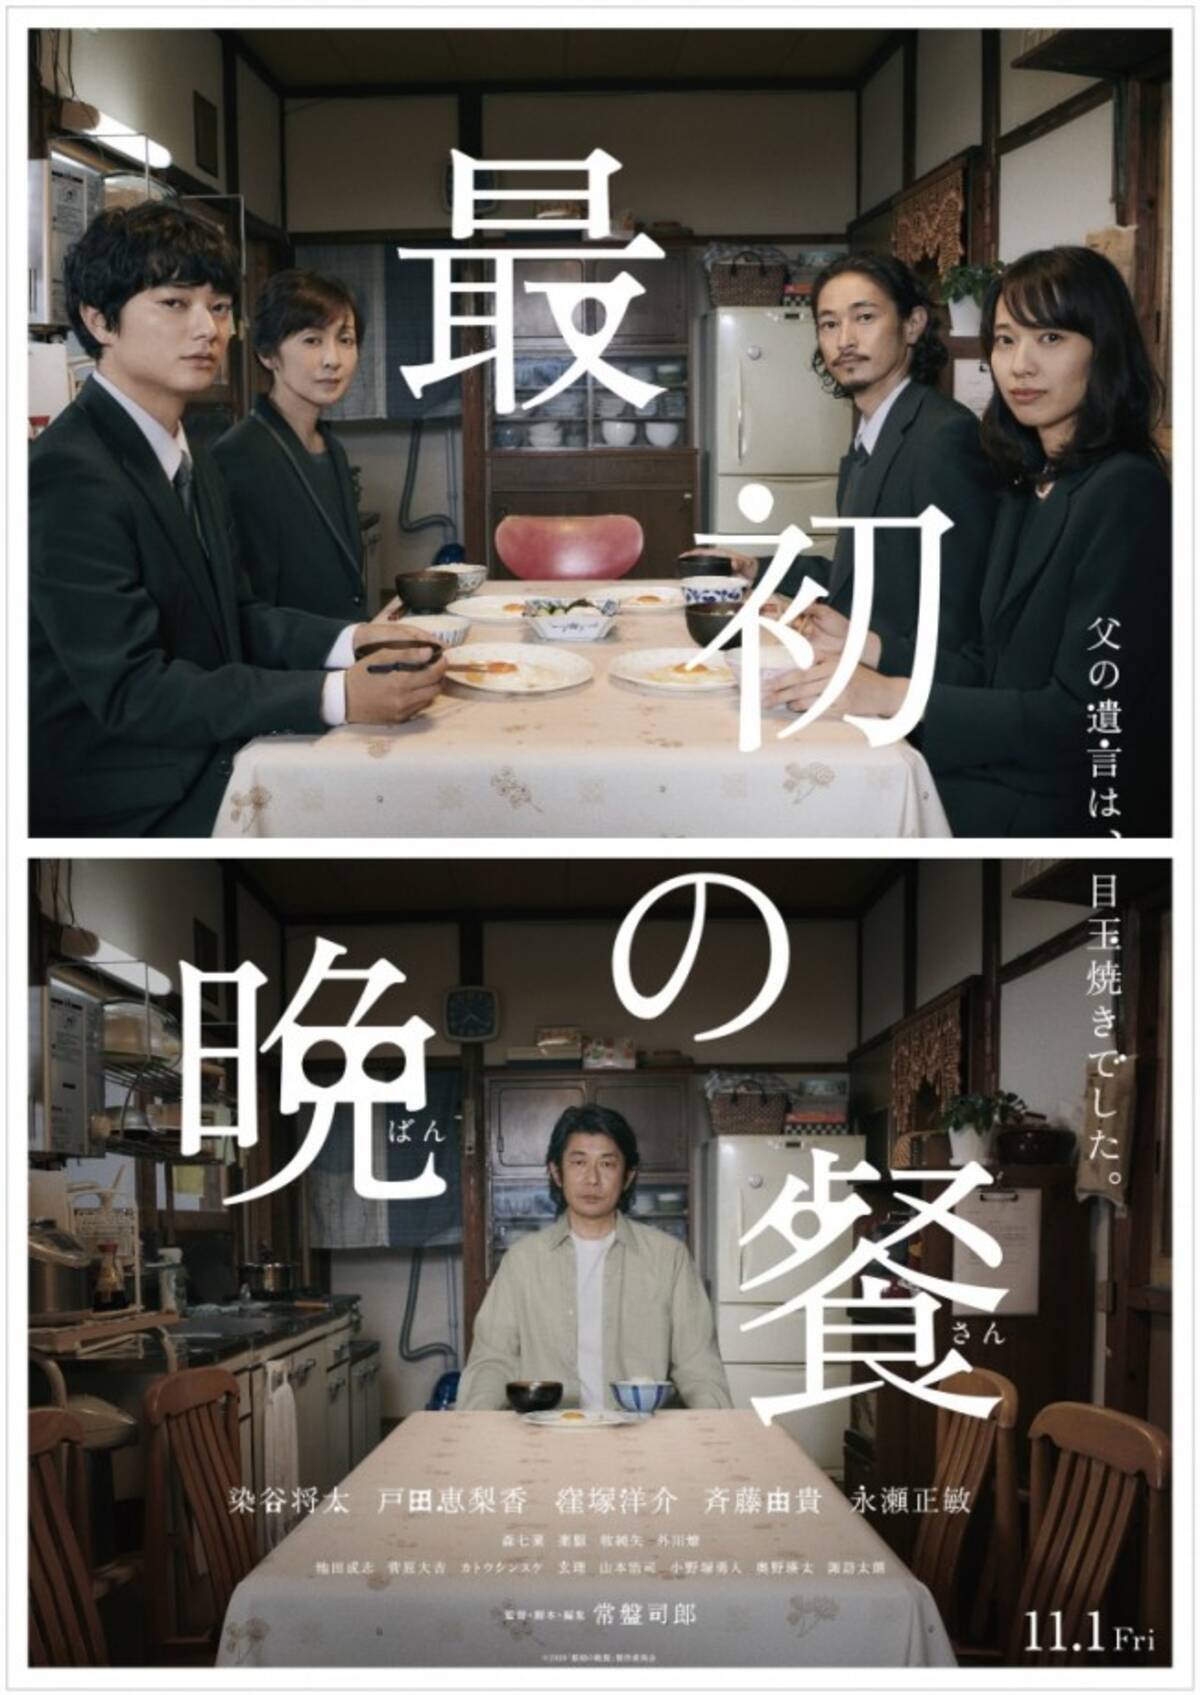 染谷将太戸田恵梨香窪塚洋介映画最初の晩餐で共演 2019年6月28